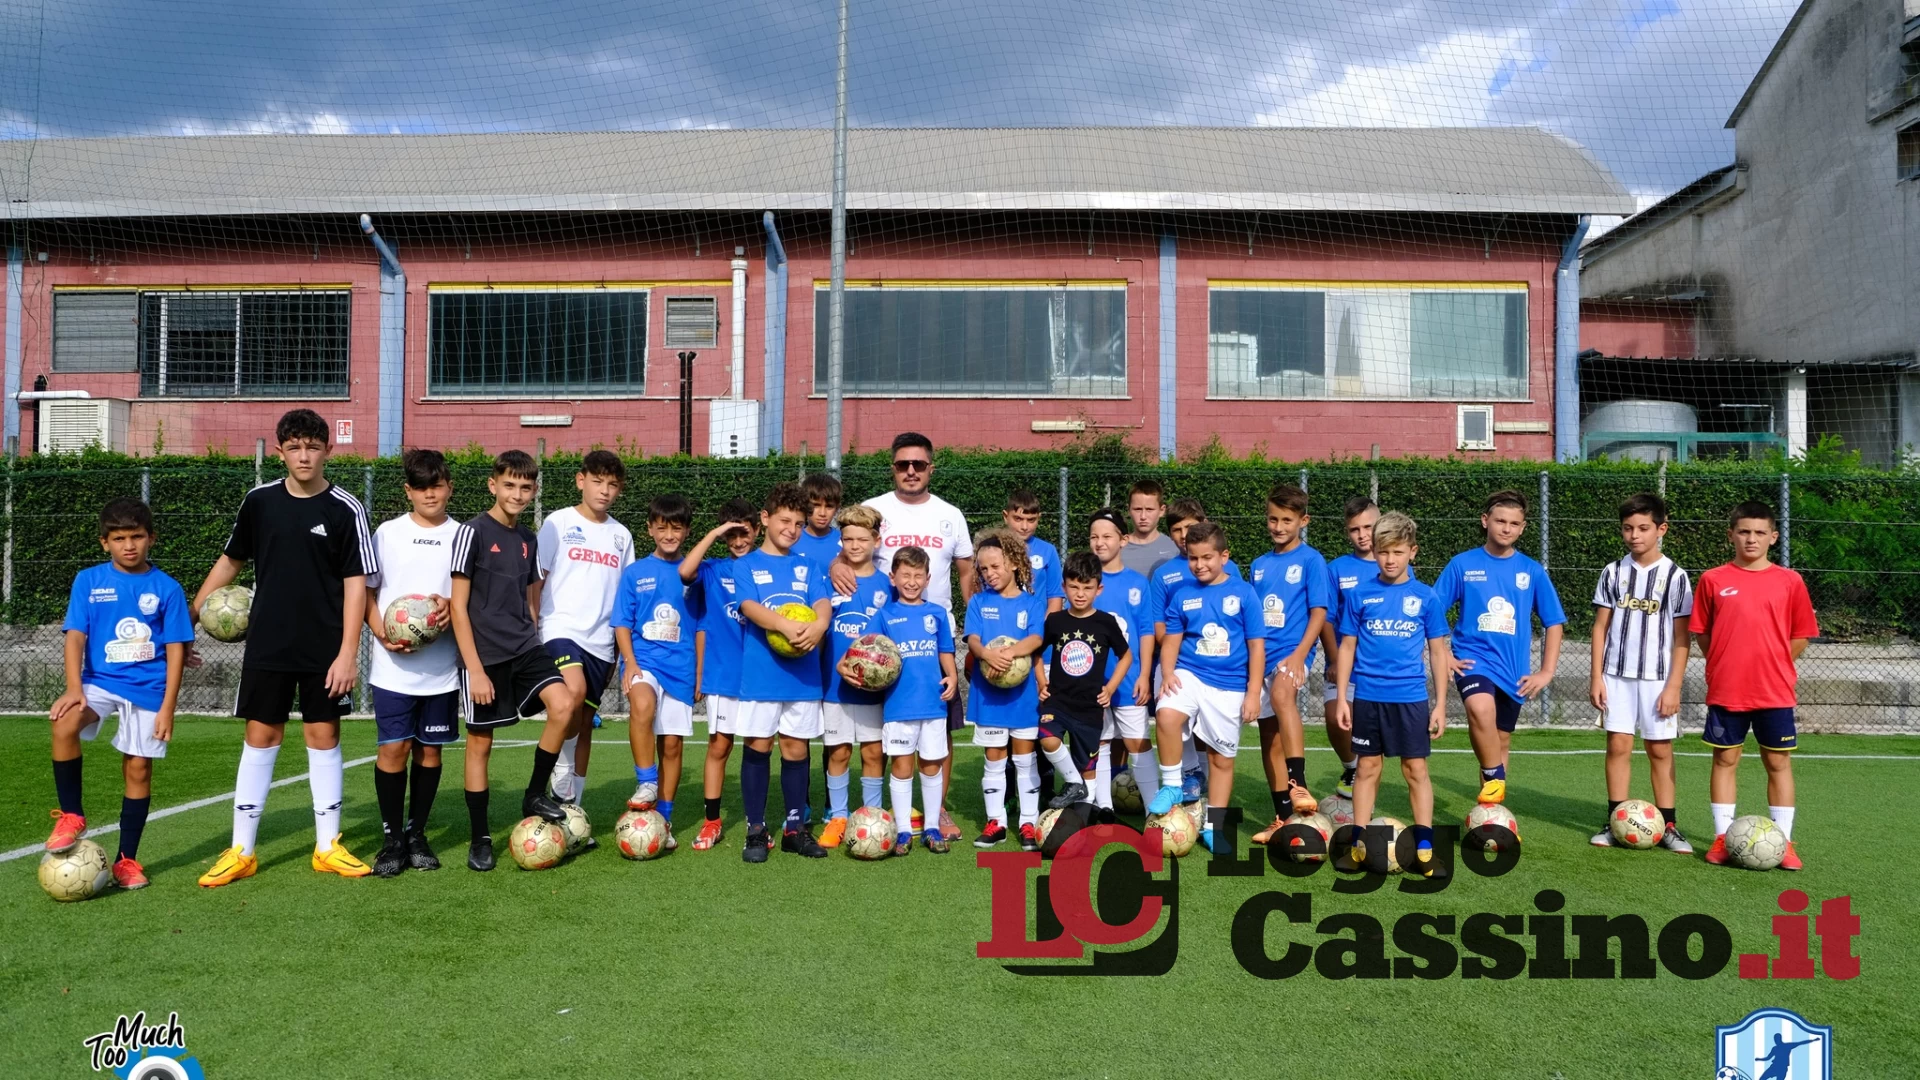 Scuola calcio "A. C. Montecassino", al via la stagione calcistica